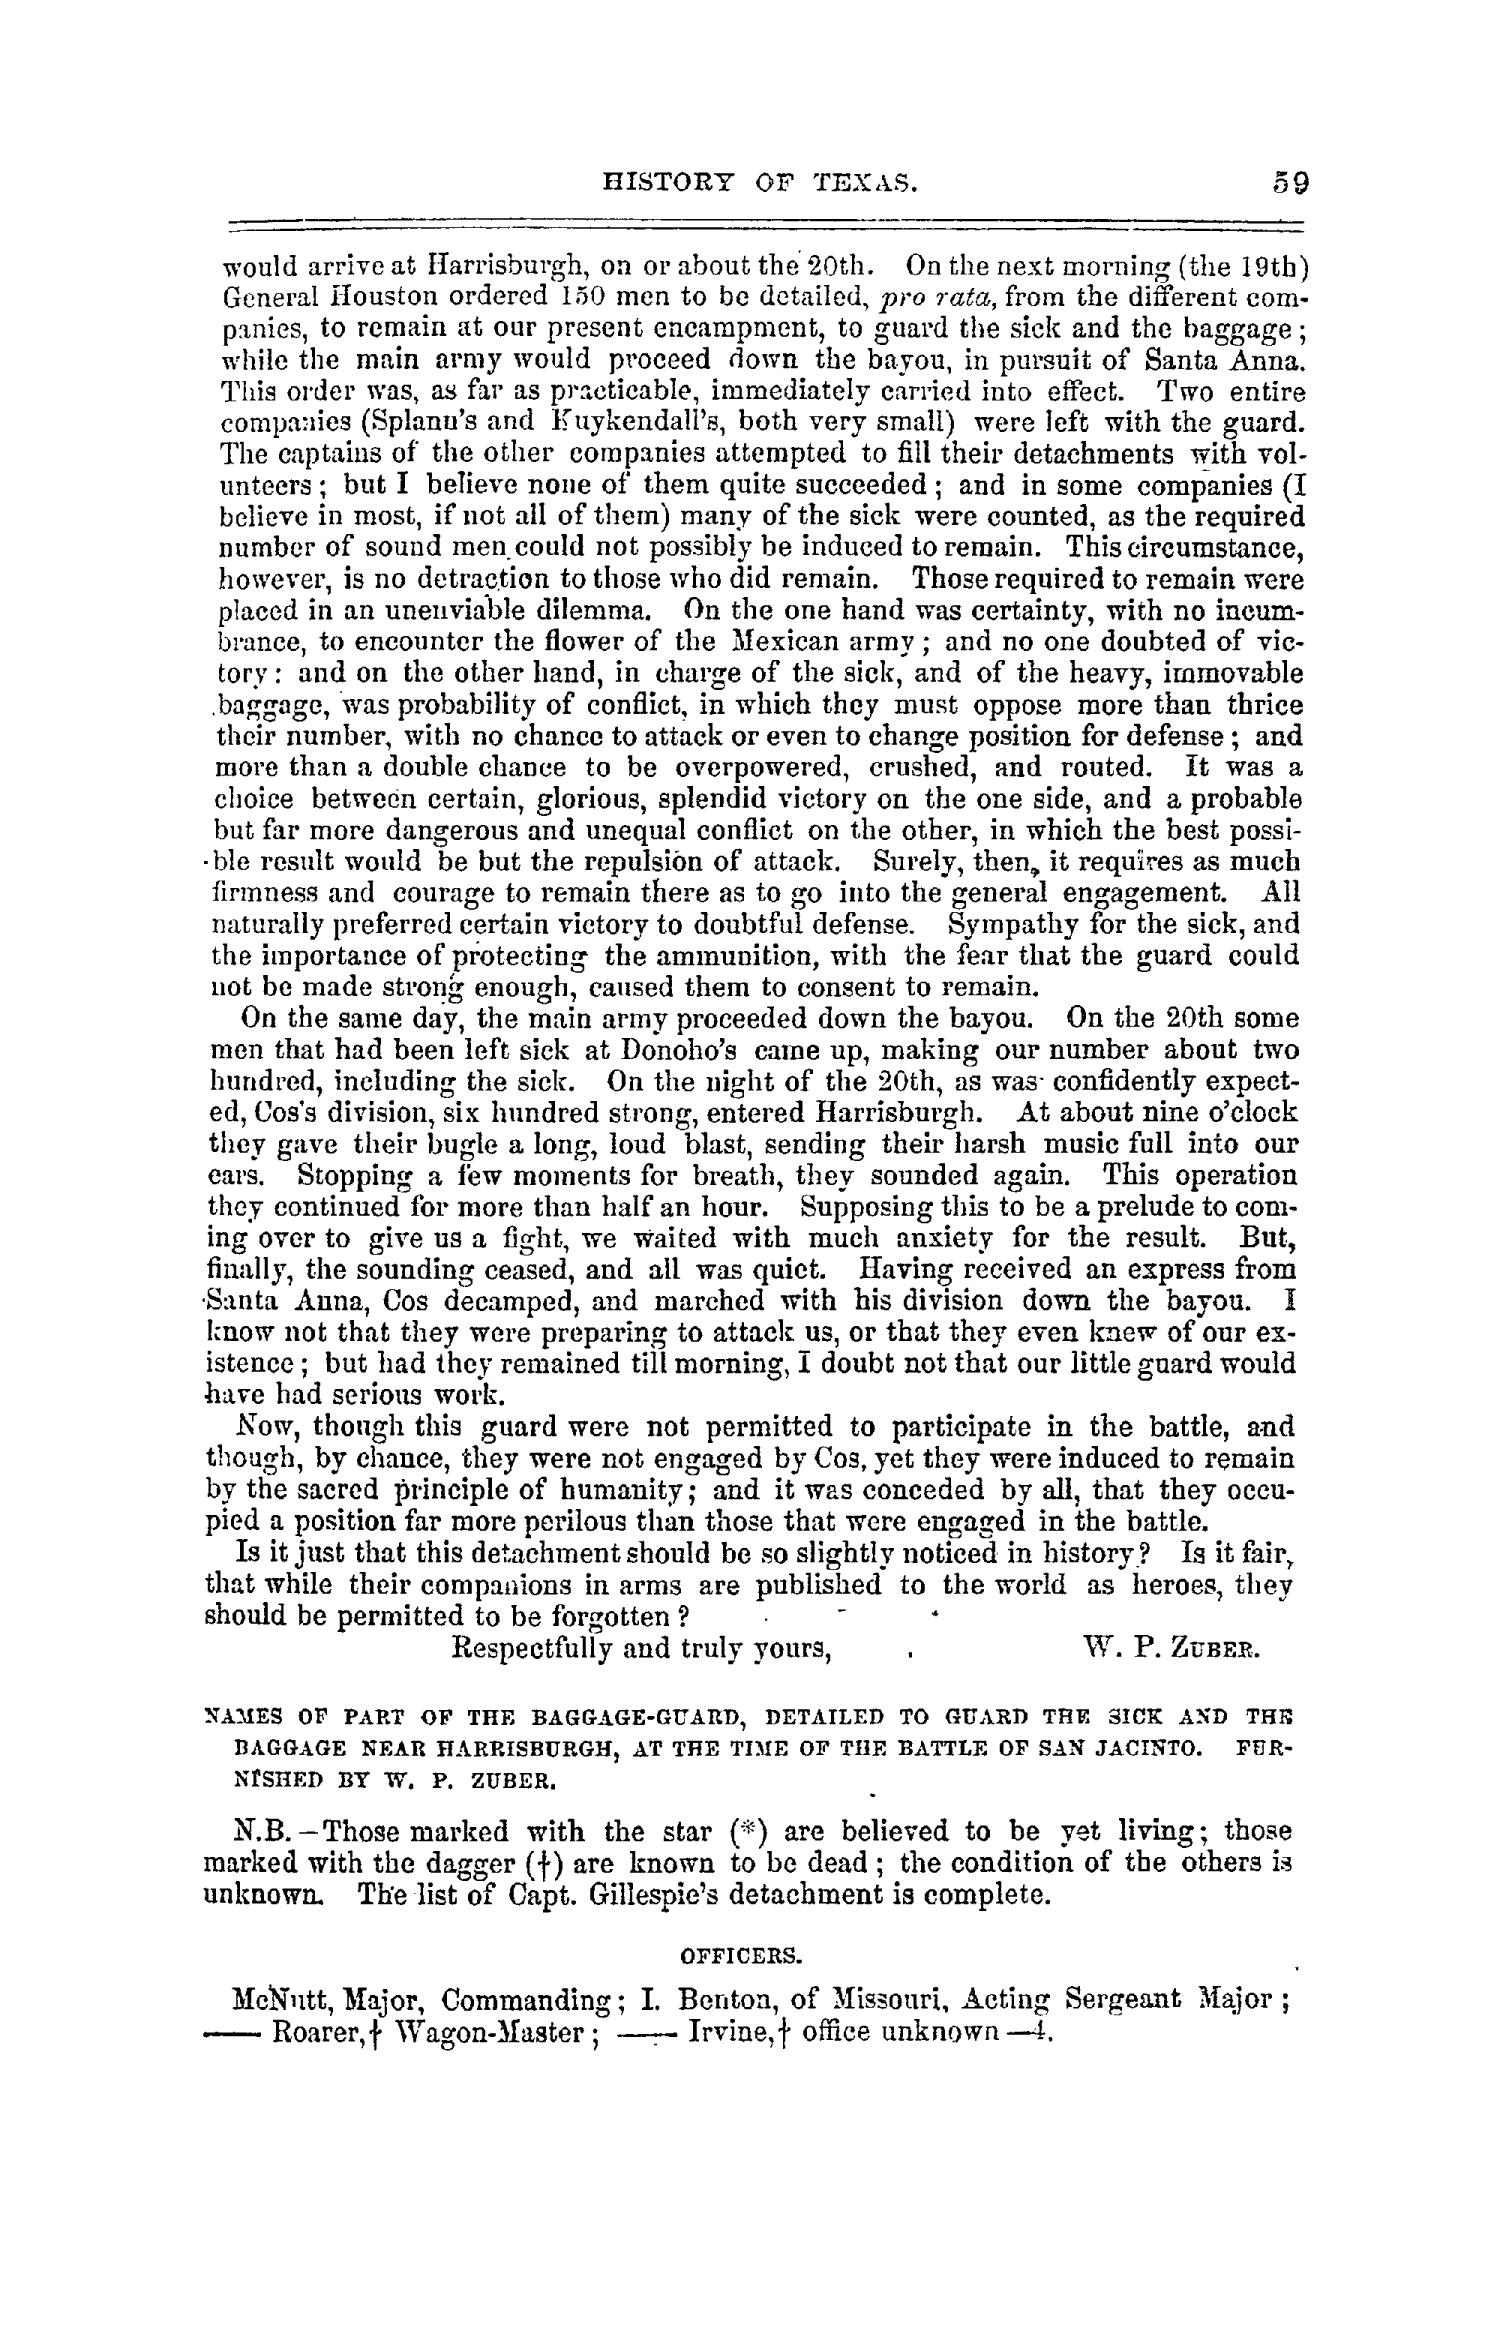 The Texas Almanac for 1861
                                                
                                                    59
                                                